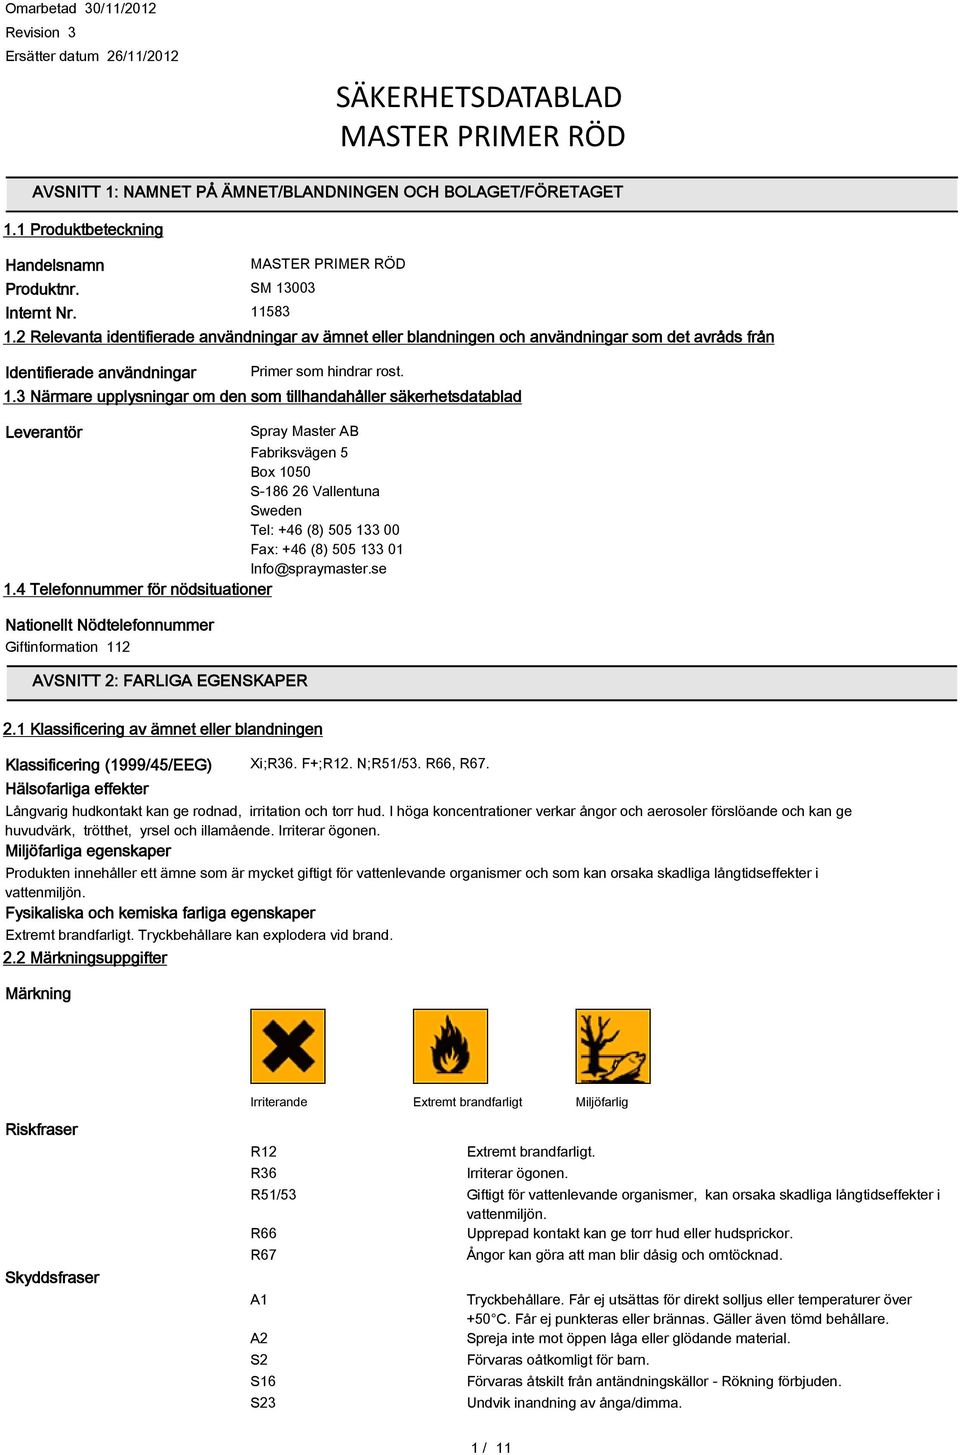 upplysningar om den som tillhandahåller säkerhetsdatablad Leverantör Spray Master AB Fabriksvägen 5 Box 1050 S-186 26 Vallentuna Sweden Tel: +46 (8) 505 133 00 Fax: +46 (8) 505 133 01